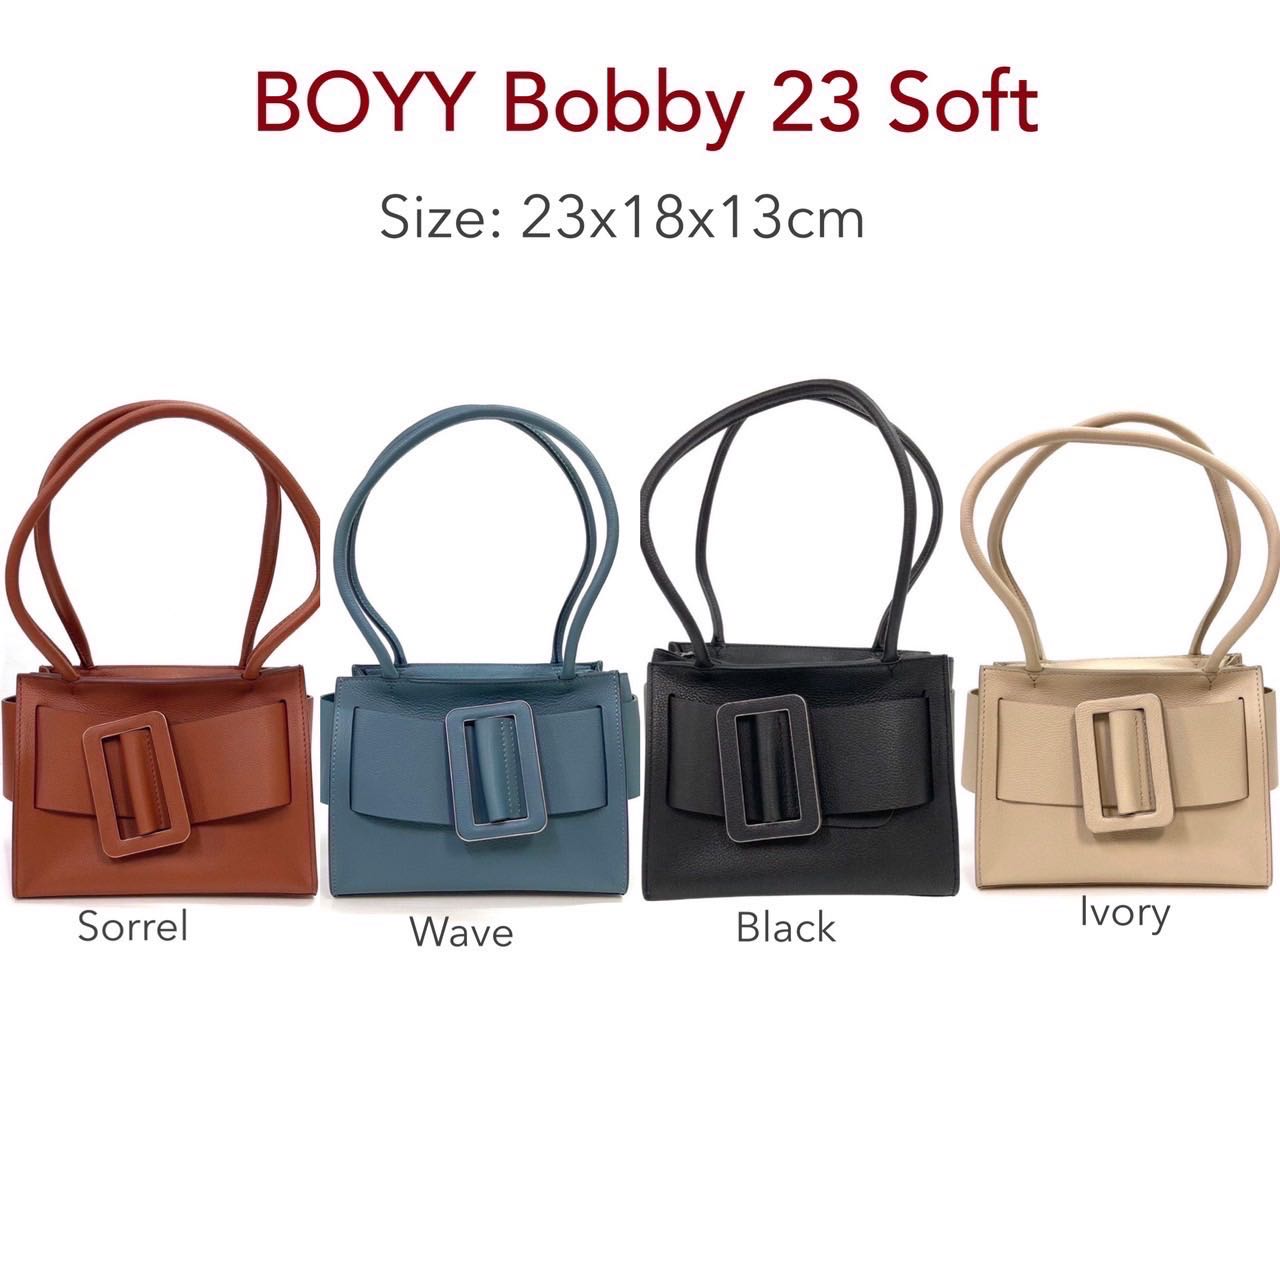 Bobby 23 – BOYY